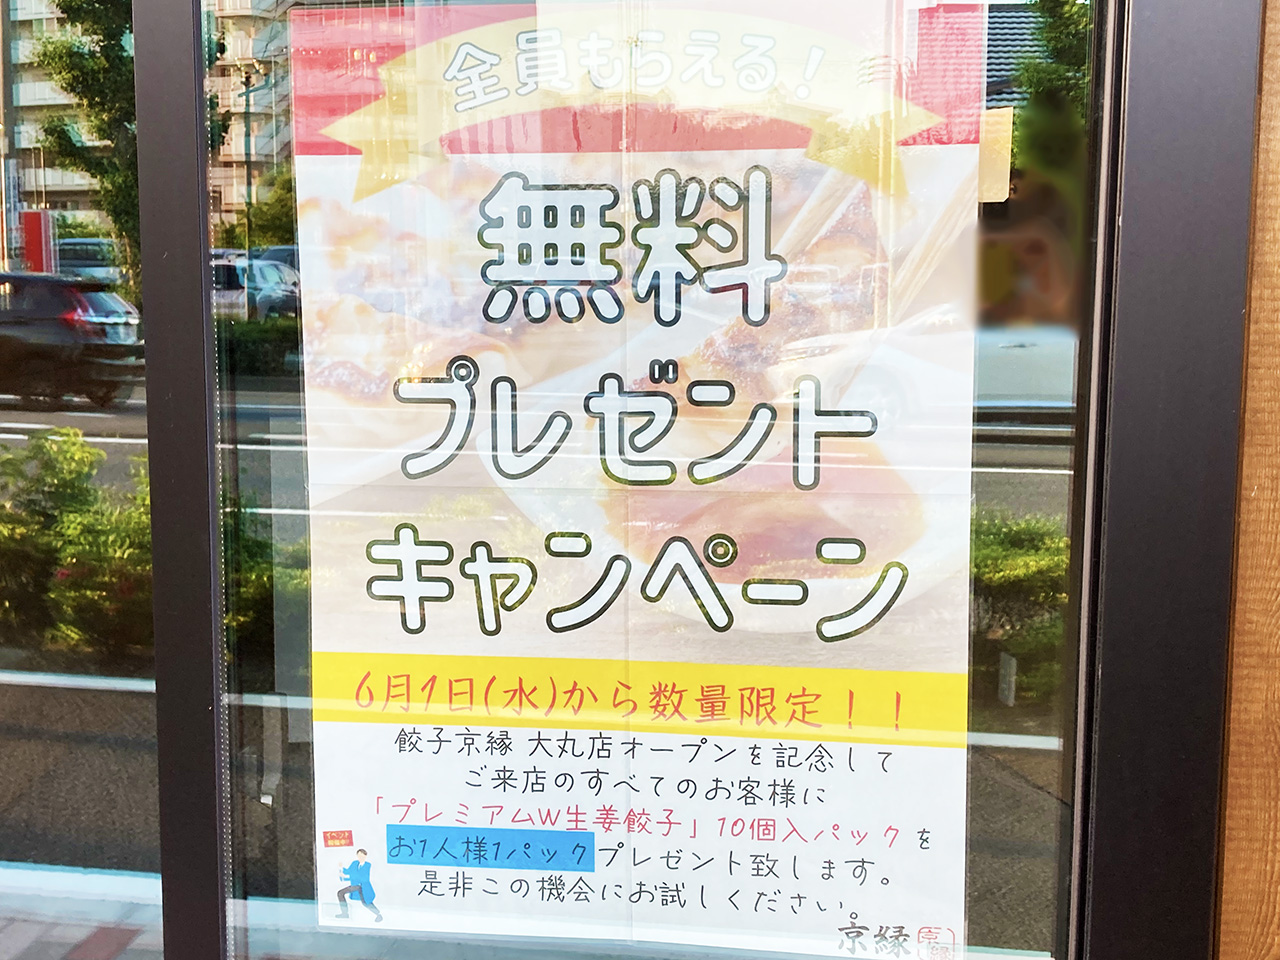 オープン初日の無料配布が話題に！稲城にオープンした無人販売の餃子店の名前は「京縁」だった！